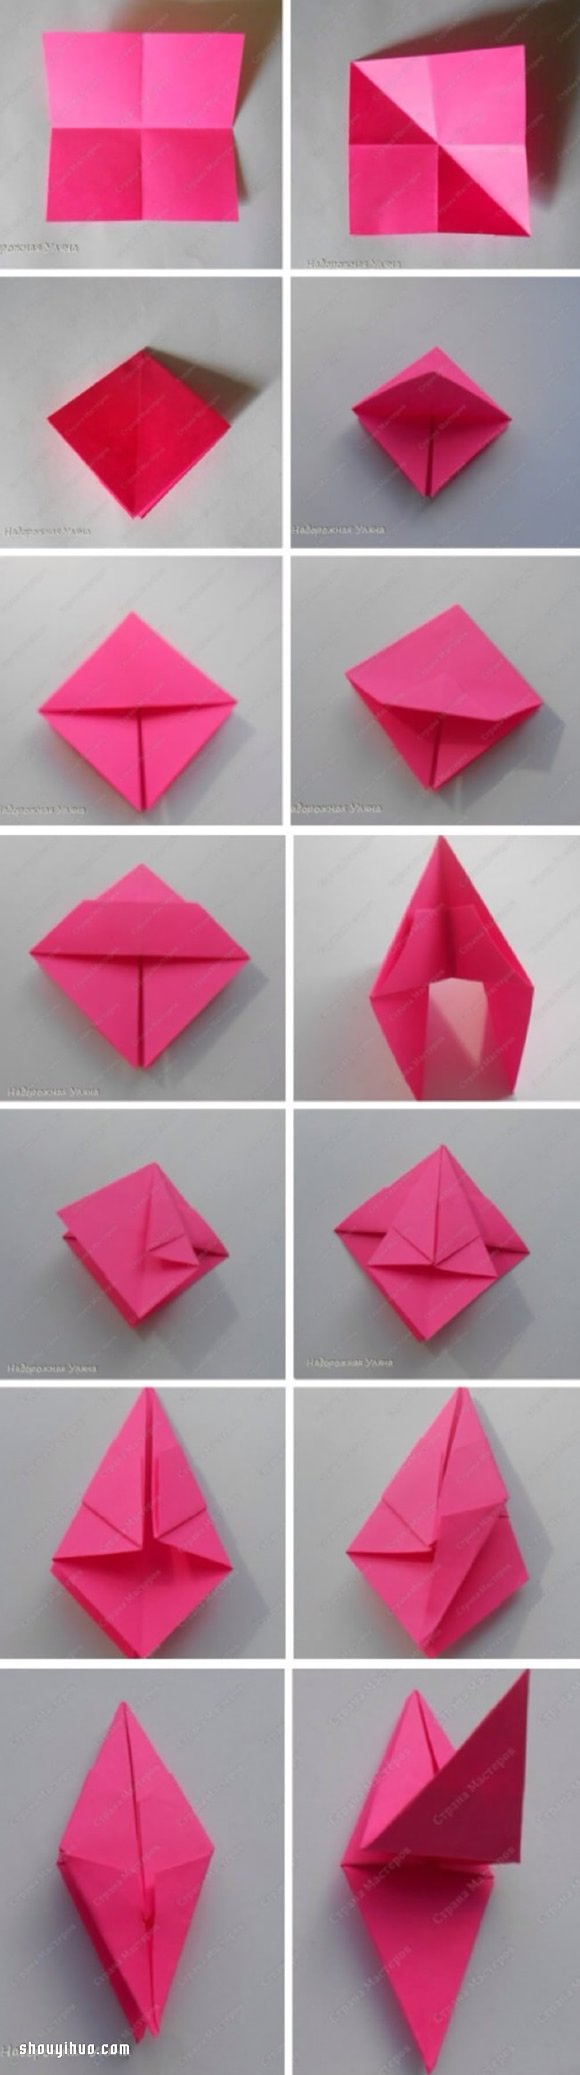 复杂的折纸花球的折法详细步骤图解